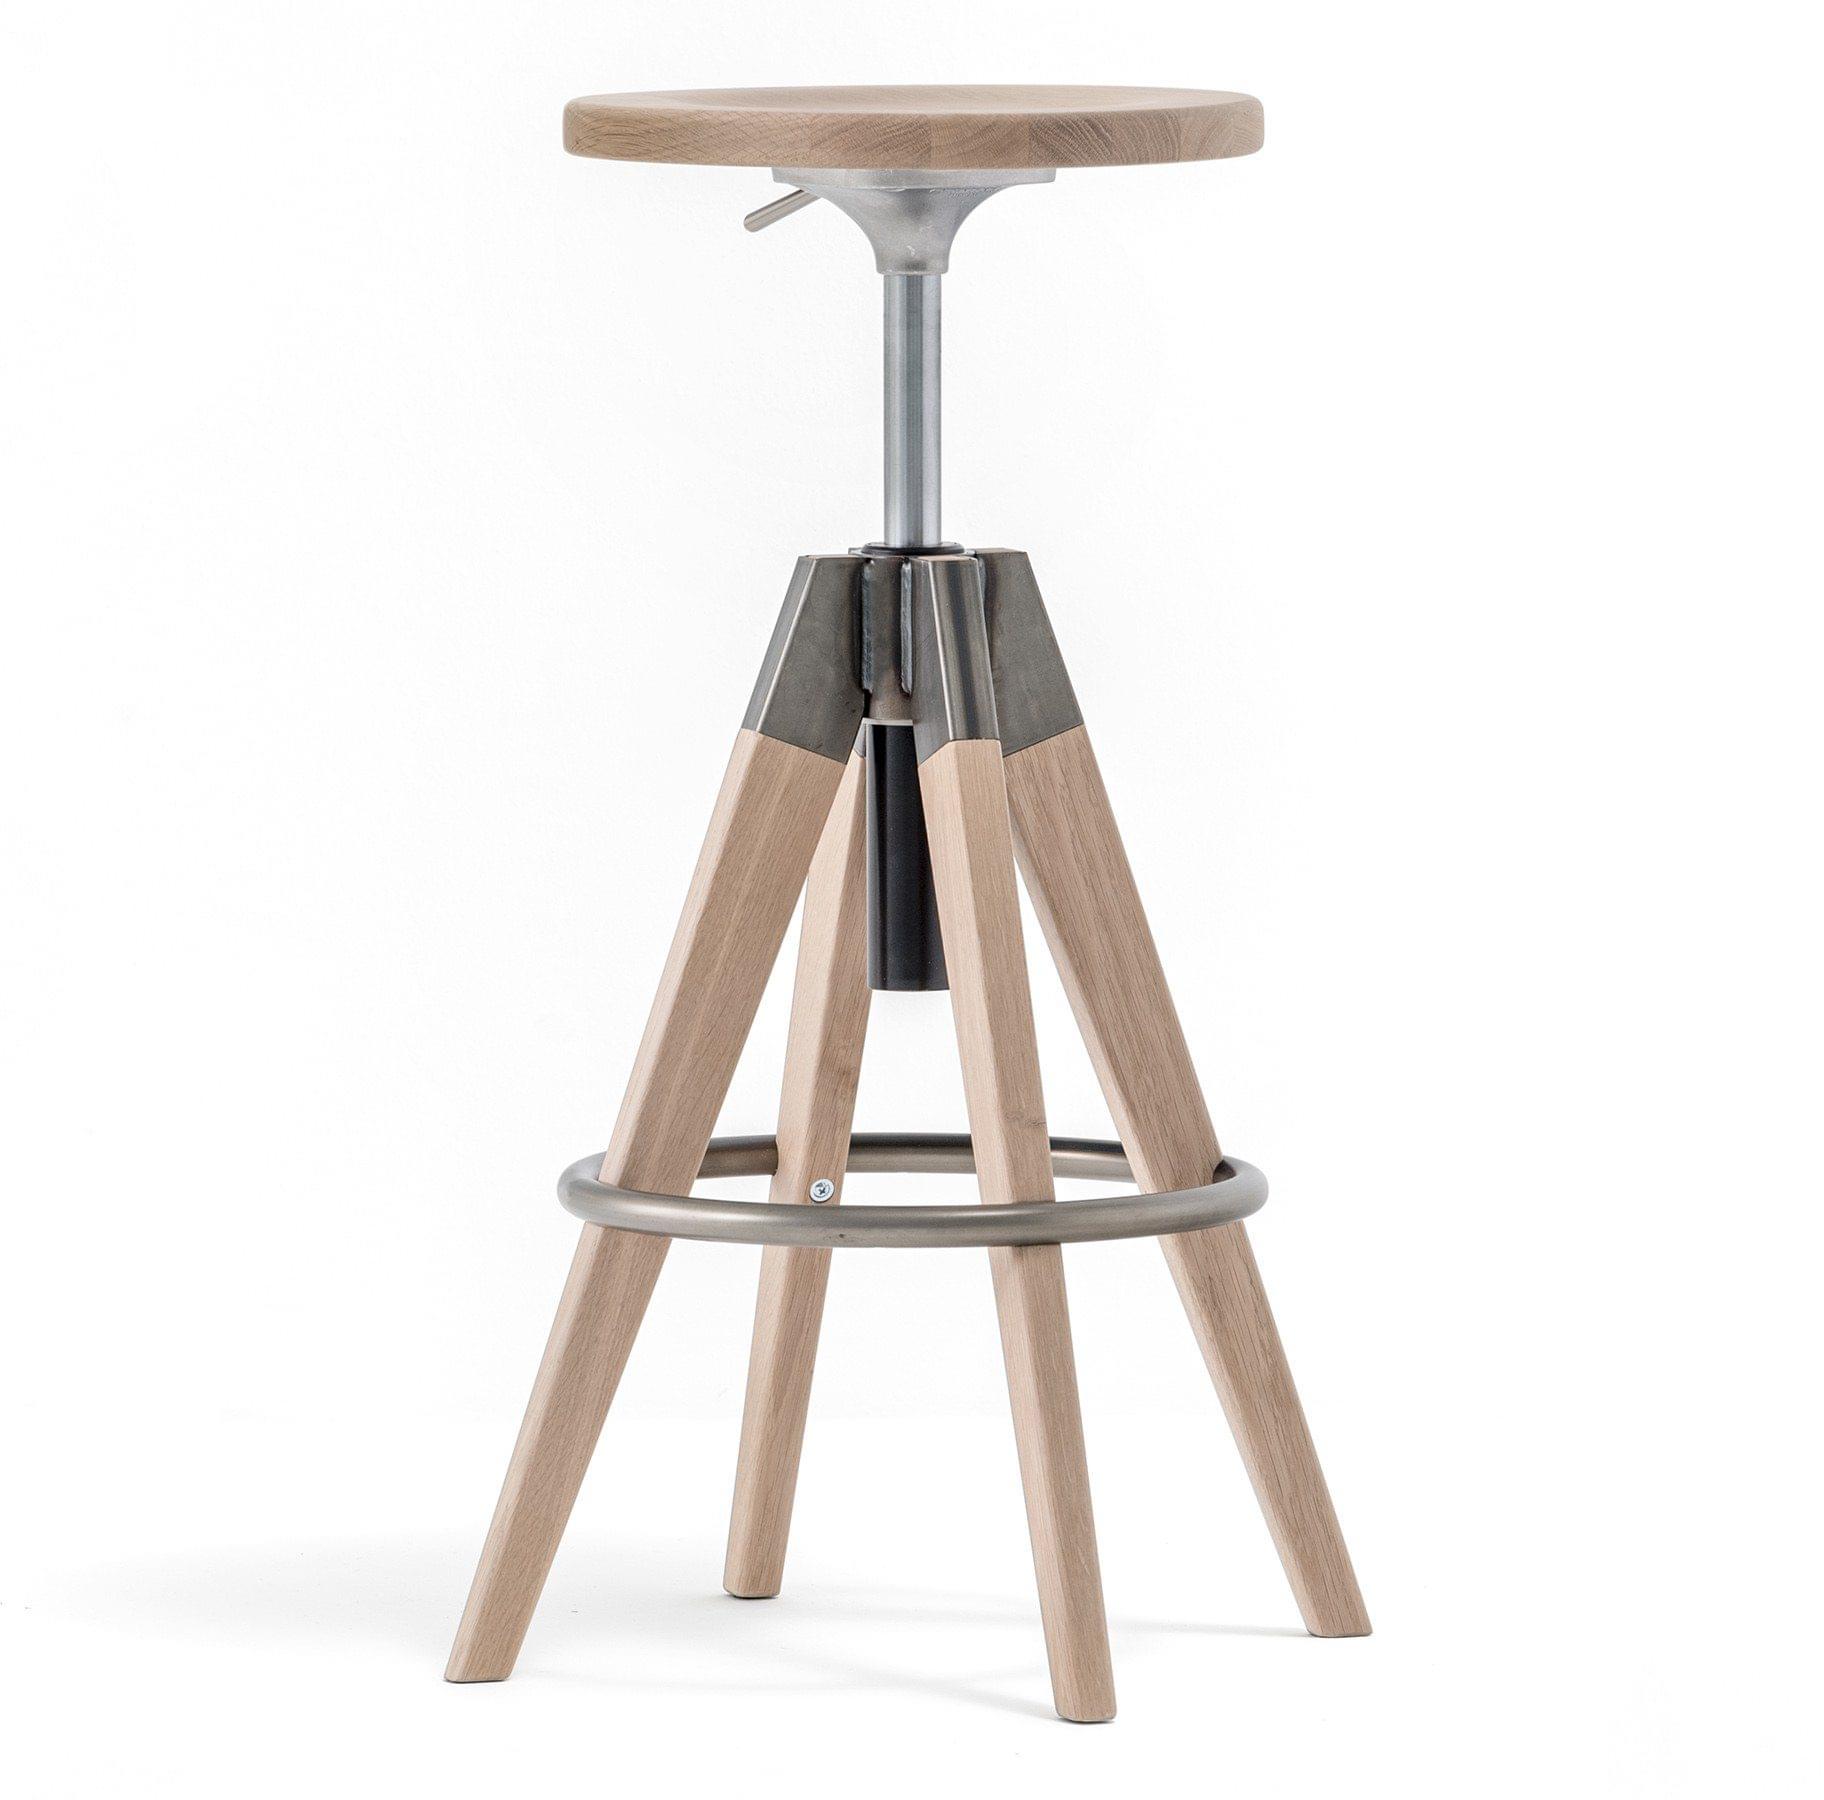 Latest-Product_Arki-stool.jpg#asset:59760